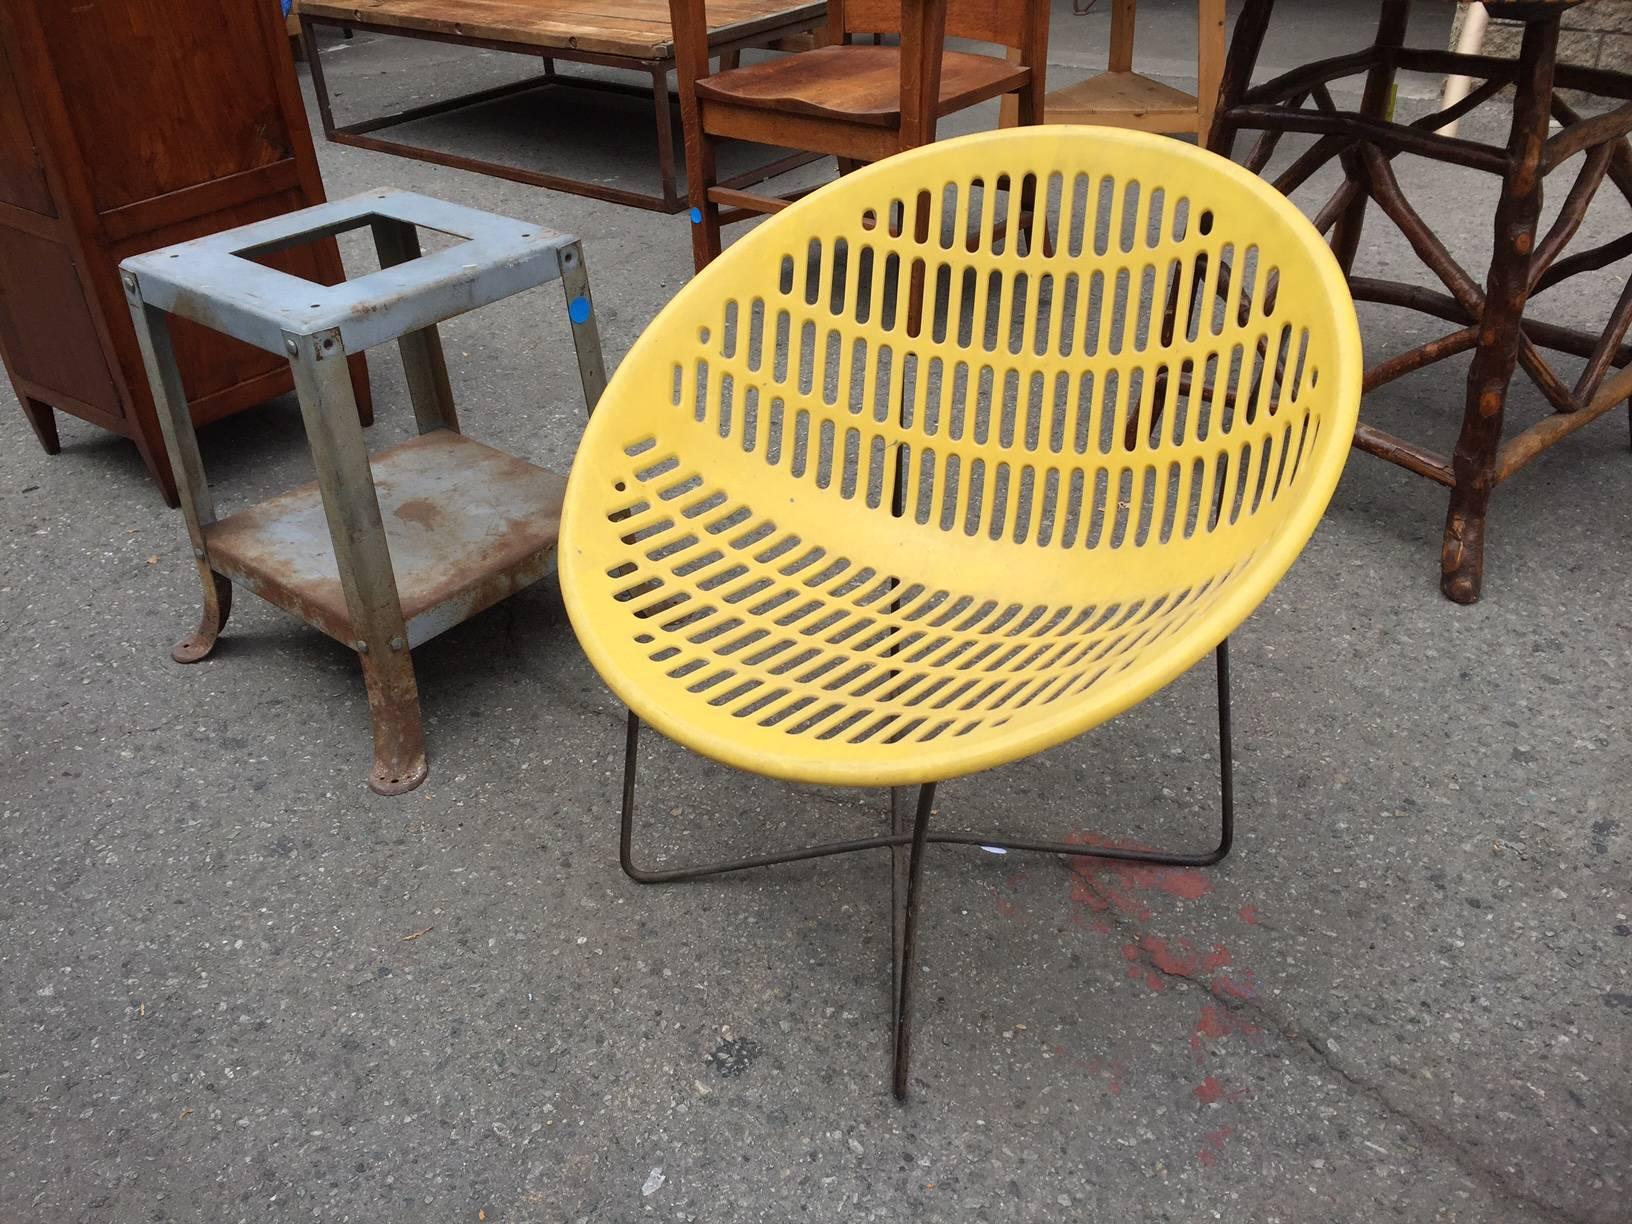 Mid-Century garden chair.
Measures: 28.50